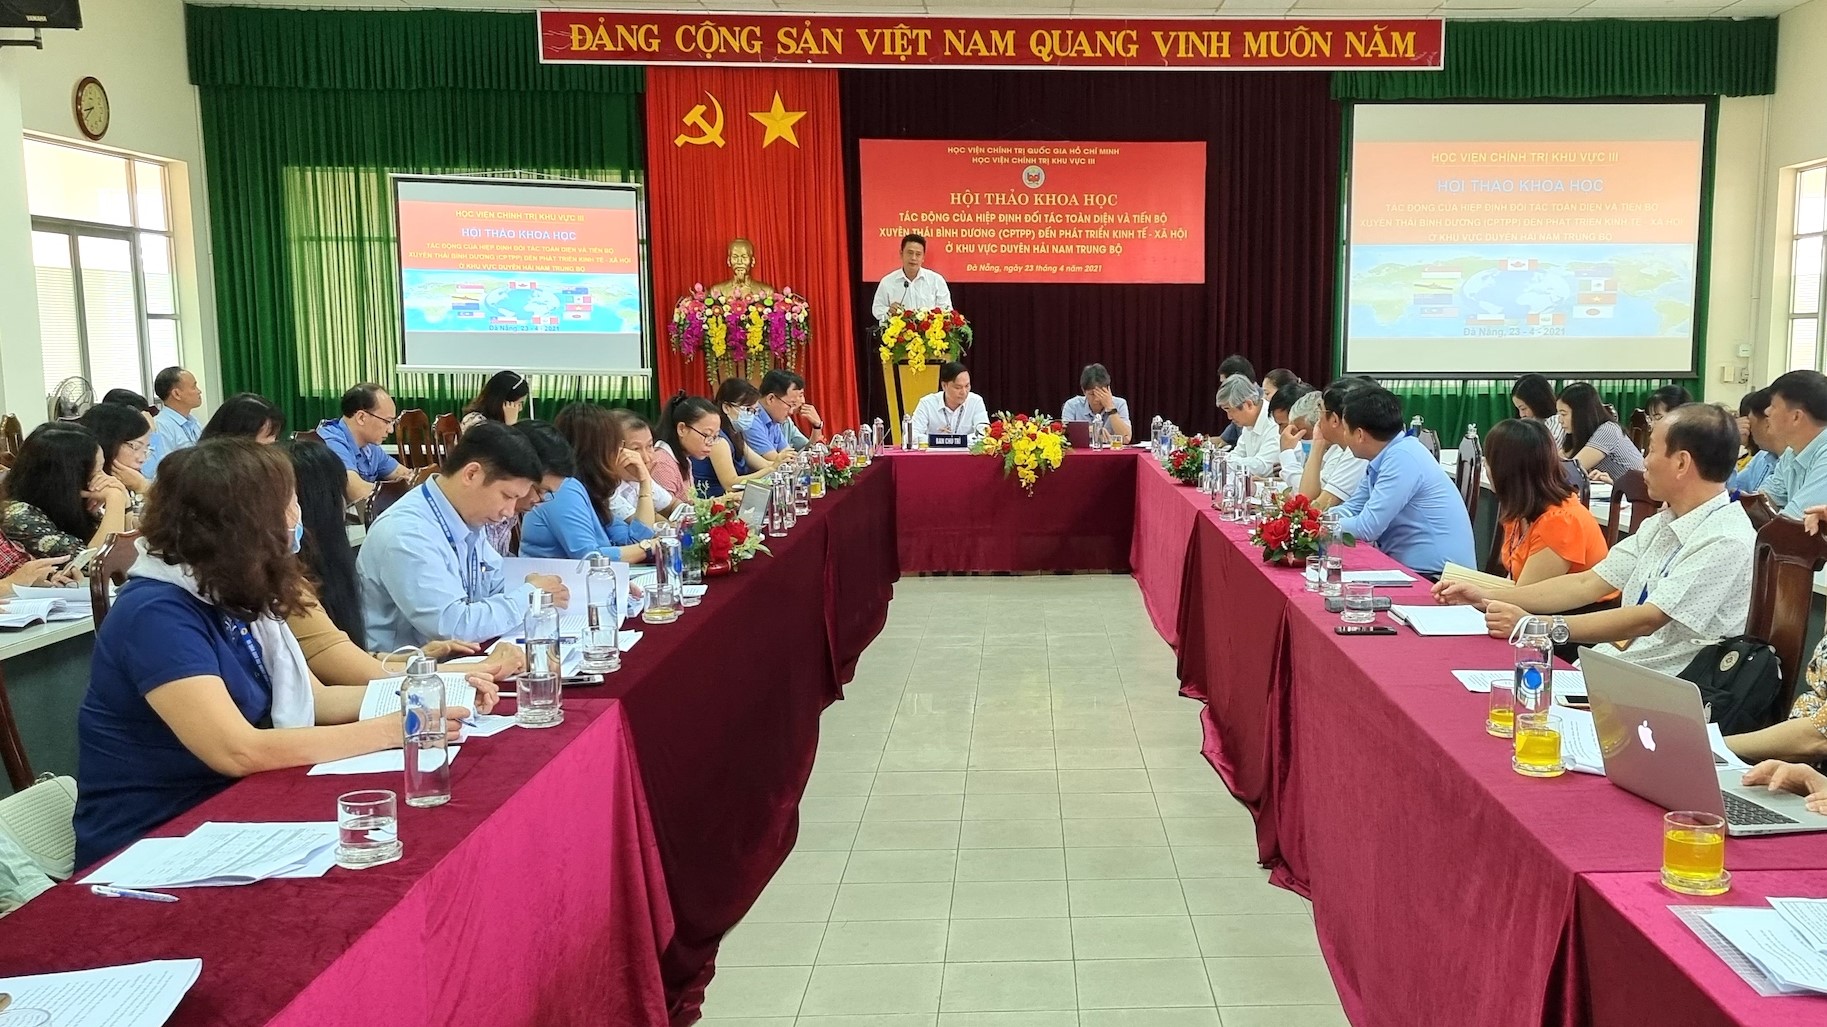 CPTPP: Cả thế giới đang chờ đợi gia nhập hiệp định thương mại mới CPTPP! Hãy xem hình ảnh liên quan để biết thêm về lợi ích của CPTPP cho Việt Nam và doanh nghiệp của bạn!